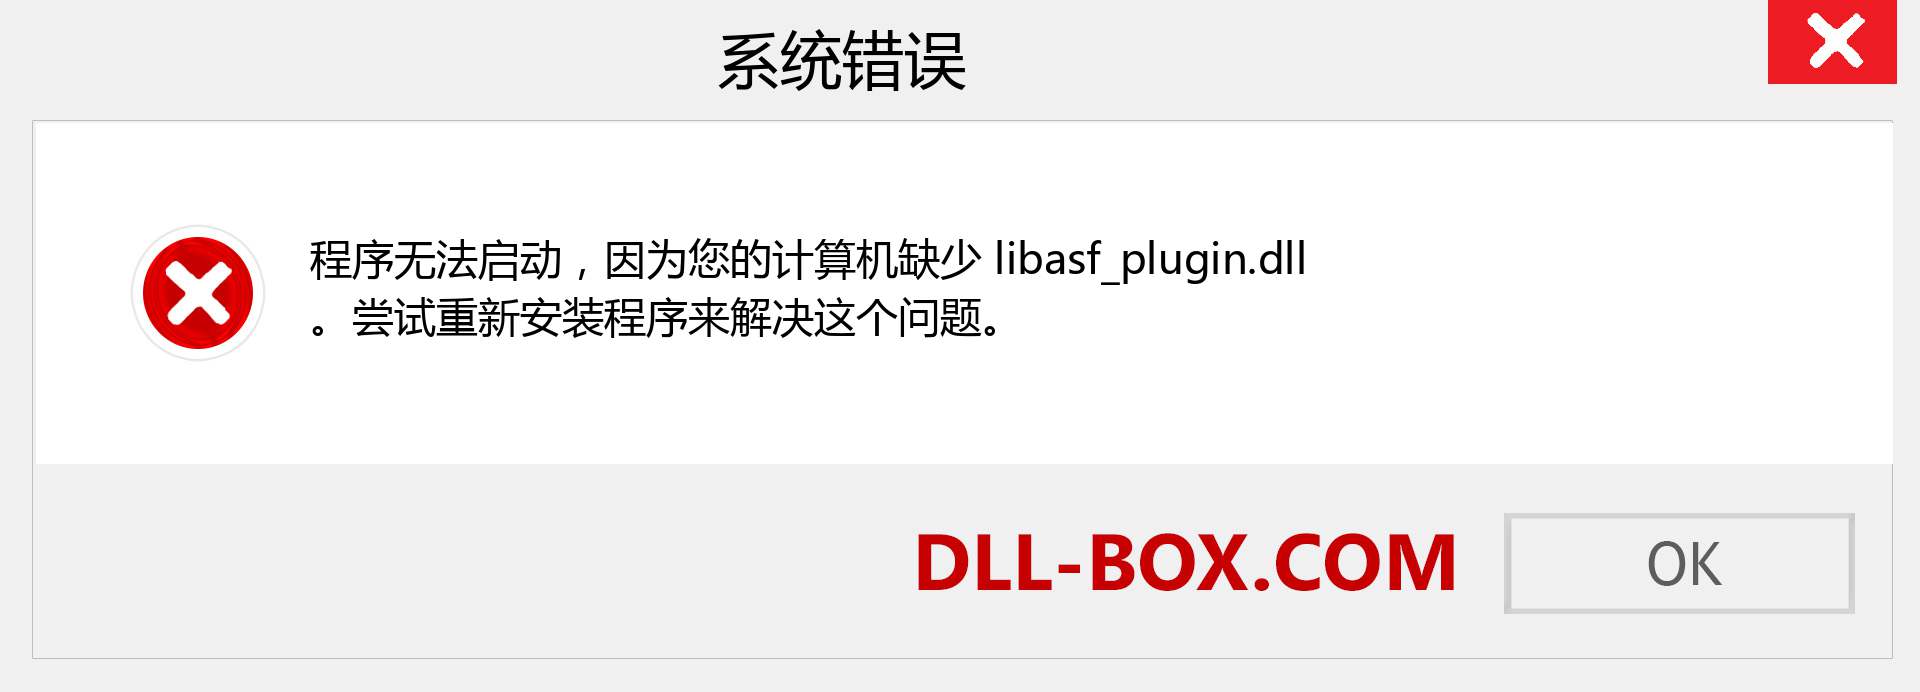 libasf_plugin.dll 文件丢失？。 适用于 Windows 7、8、10 的下载 - 修复 Windows、照片、图像上的 libasf_plugin dll 丢失错误